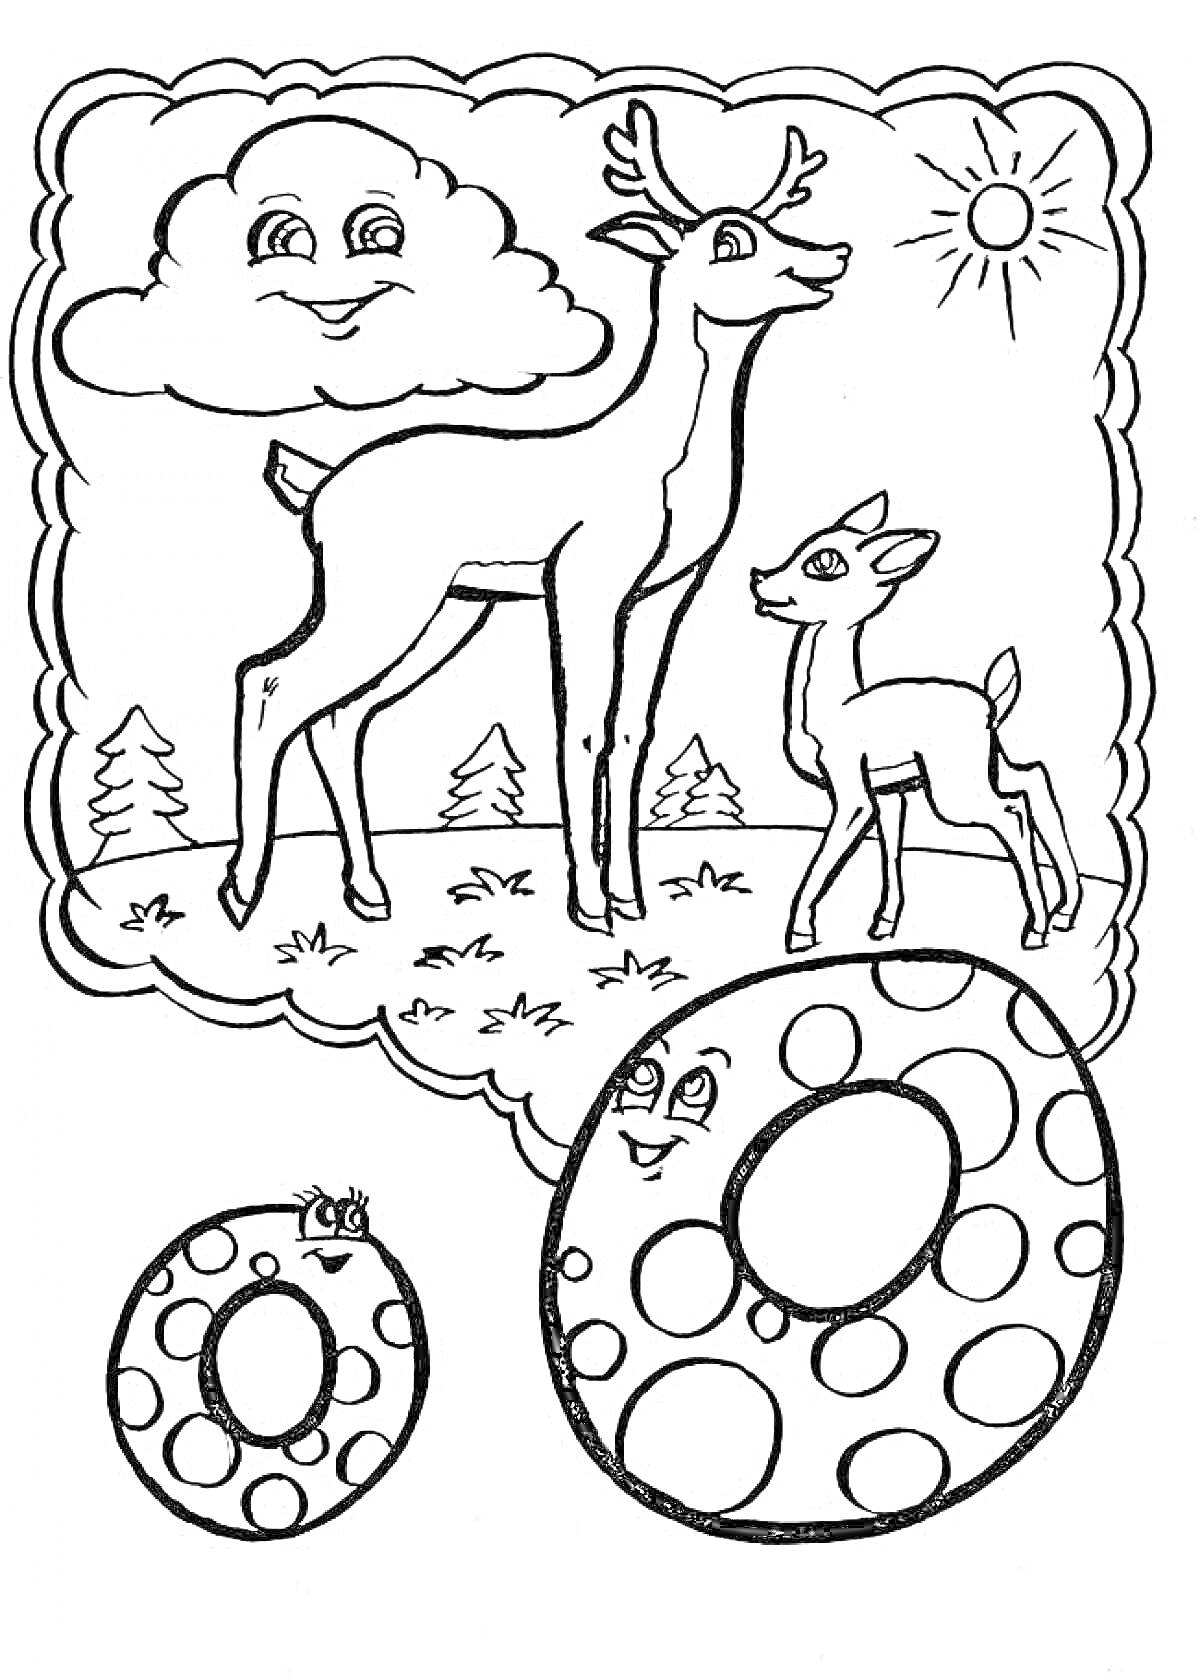 Раскраска Буква О с оленями, облаком, солнцем и деревьями